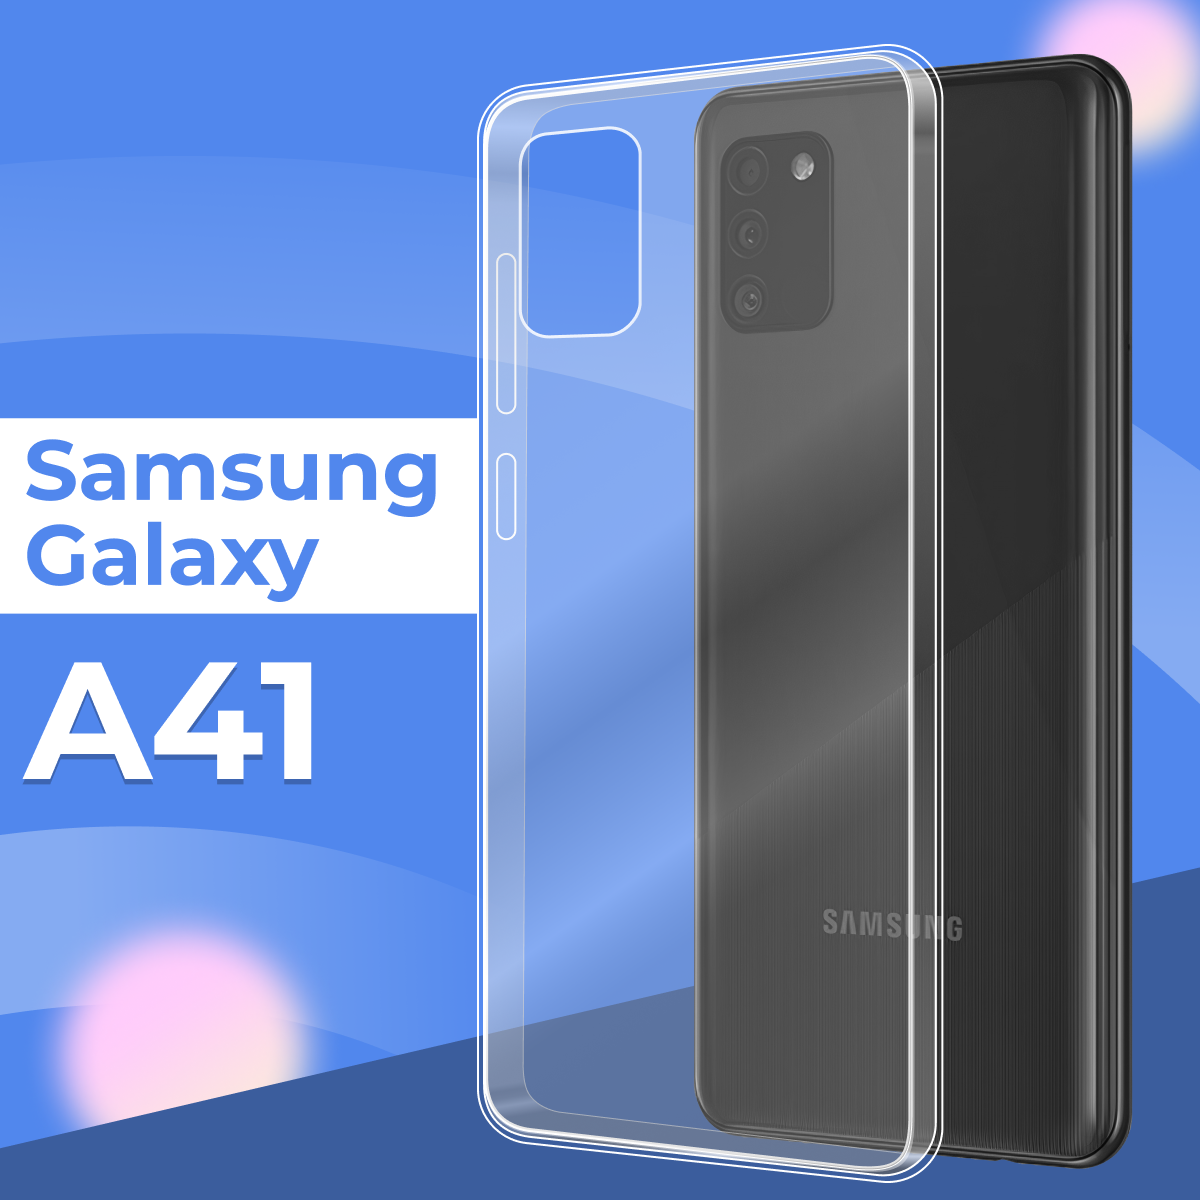 Ультратонкий силиконовый чехол для телефона Samsung Galaxy A41 / Прозрачный защитный чехол для Самсунг Галакси А41 / Premium силикон